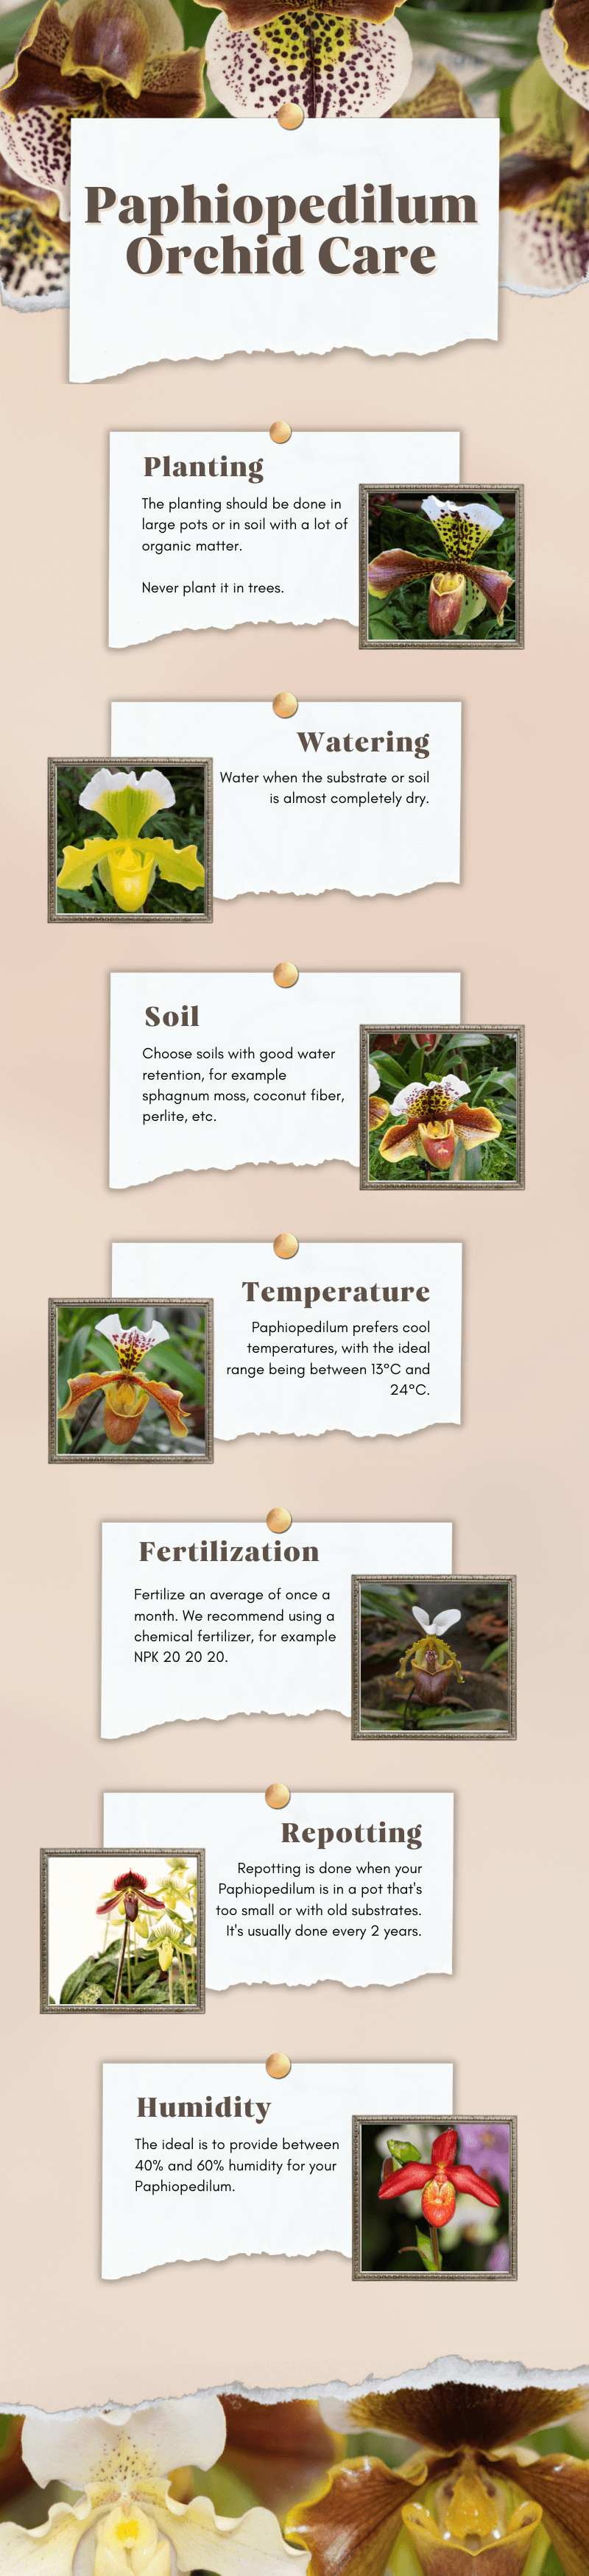 Paphiopedilum orchid care - infographic